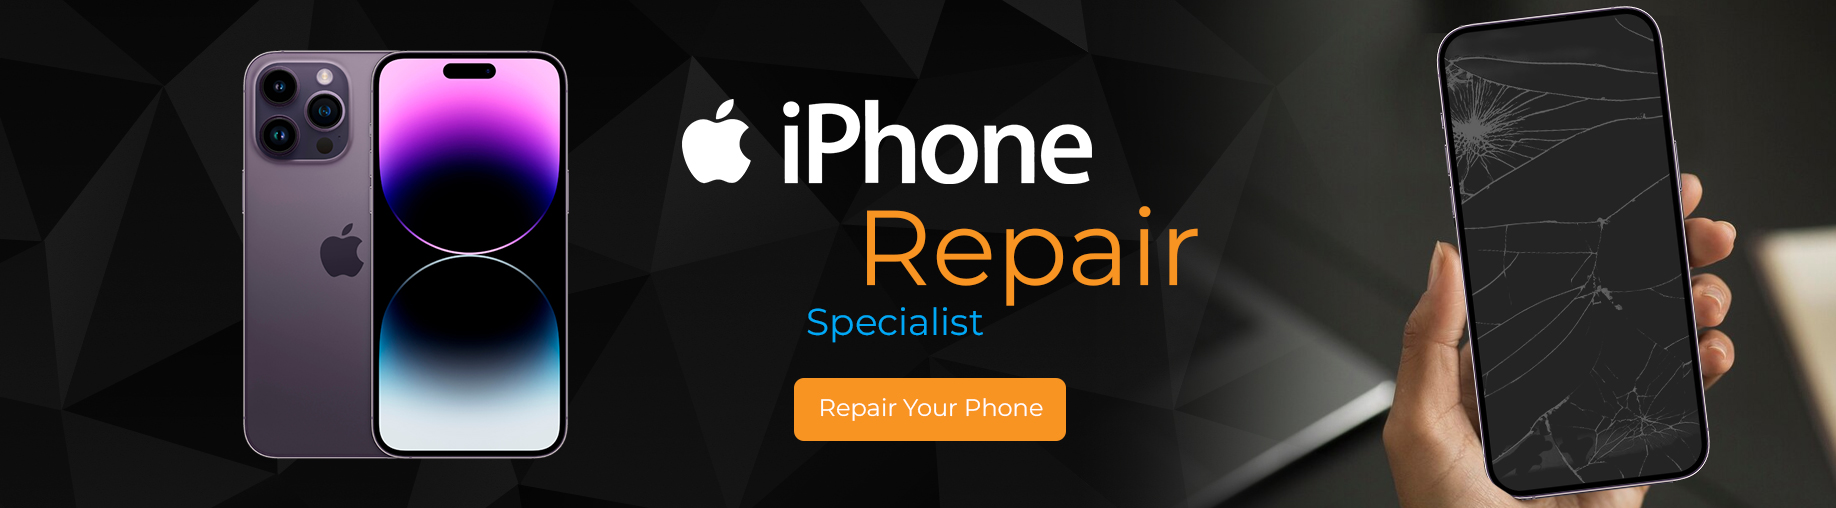 iPhone Repair Specialist